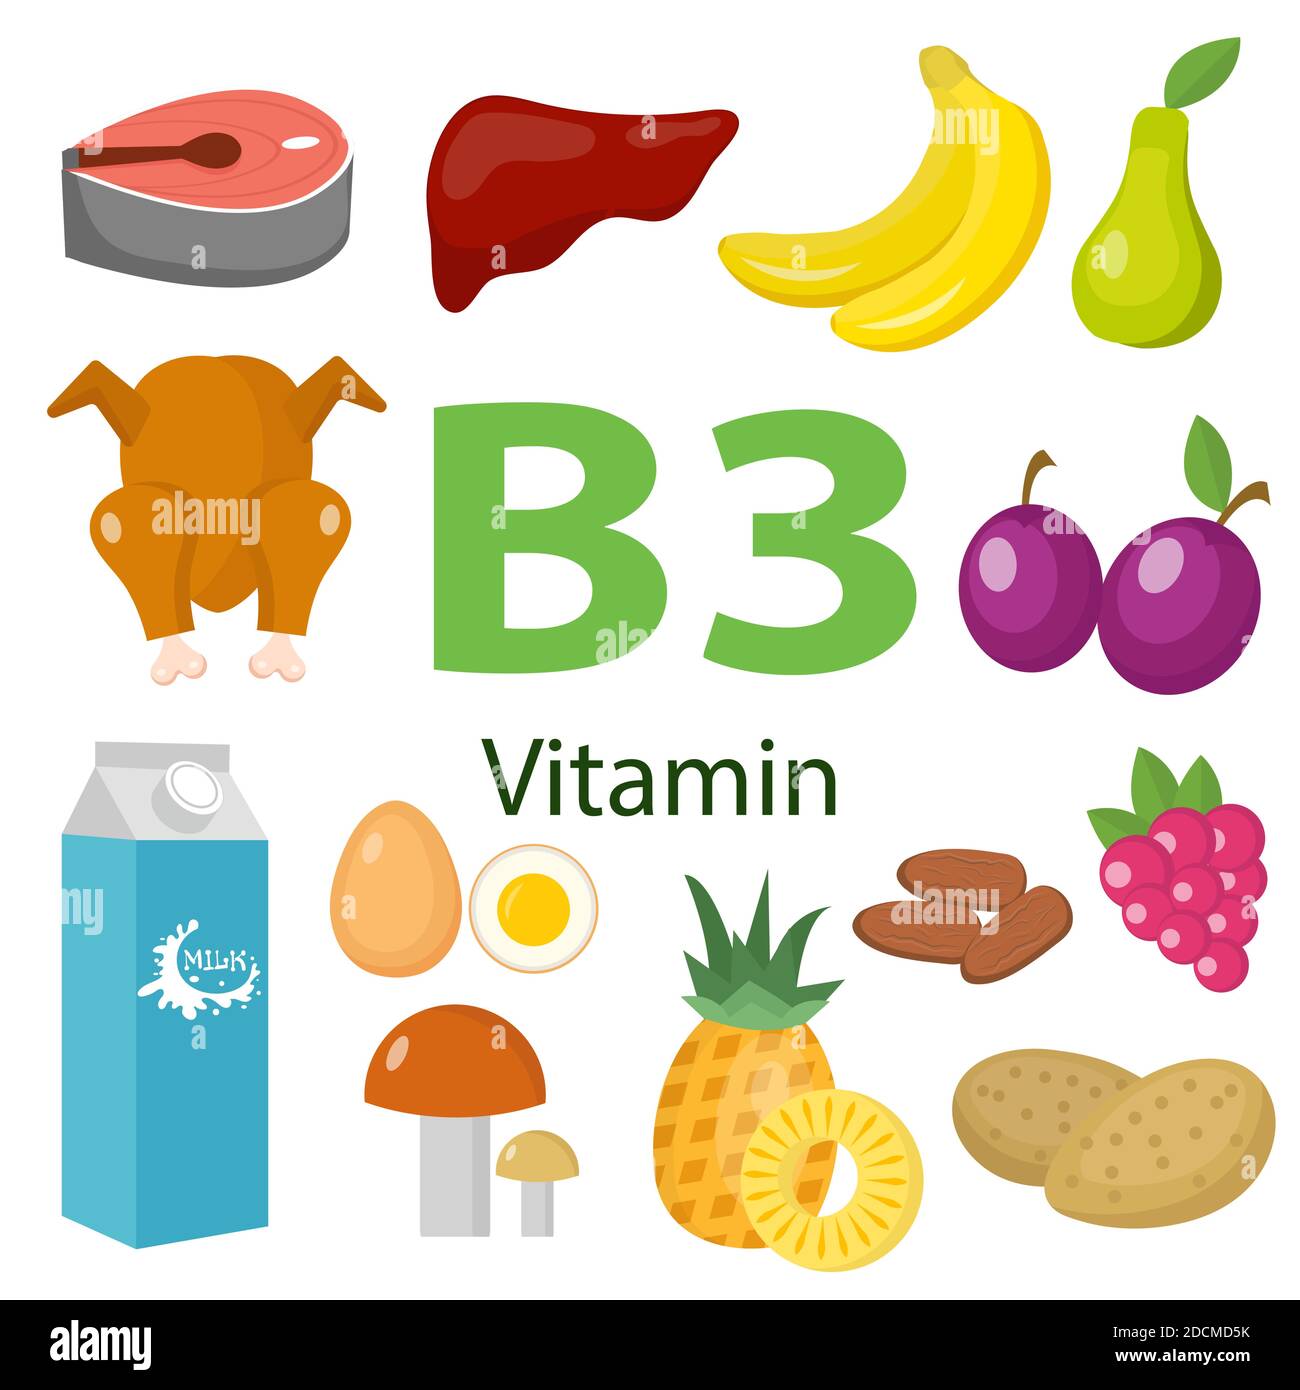 Vitamine und Mineralien Lebensmittel .Vektor-Satz von vitaminreichen Lebensmitteln. Vitamin B3 Fleisch, Spinat, Geflügel, Fisch, Leber, Pilze, Kartoffeln und Erdnüsse Stock Vektor